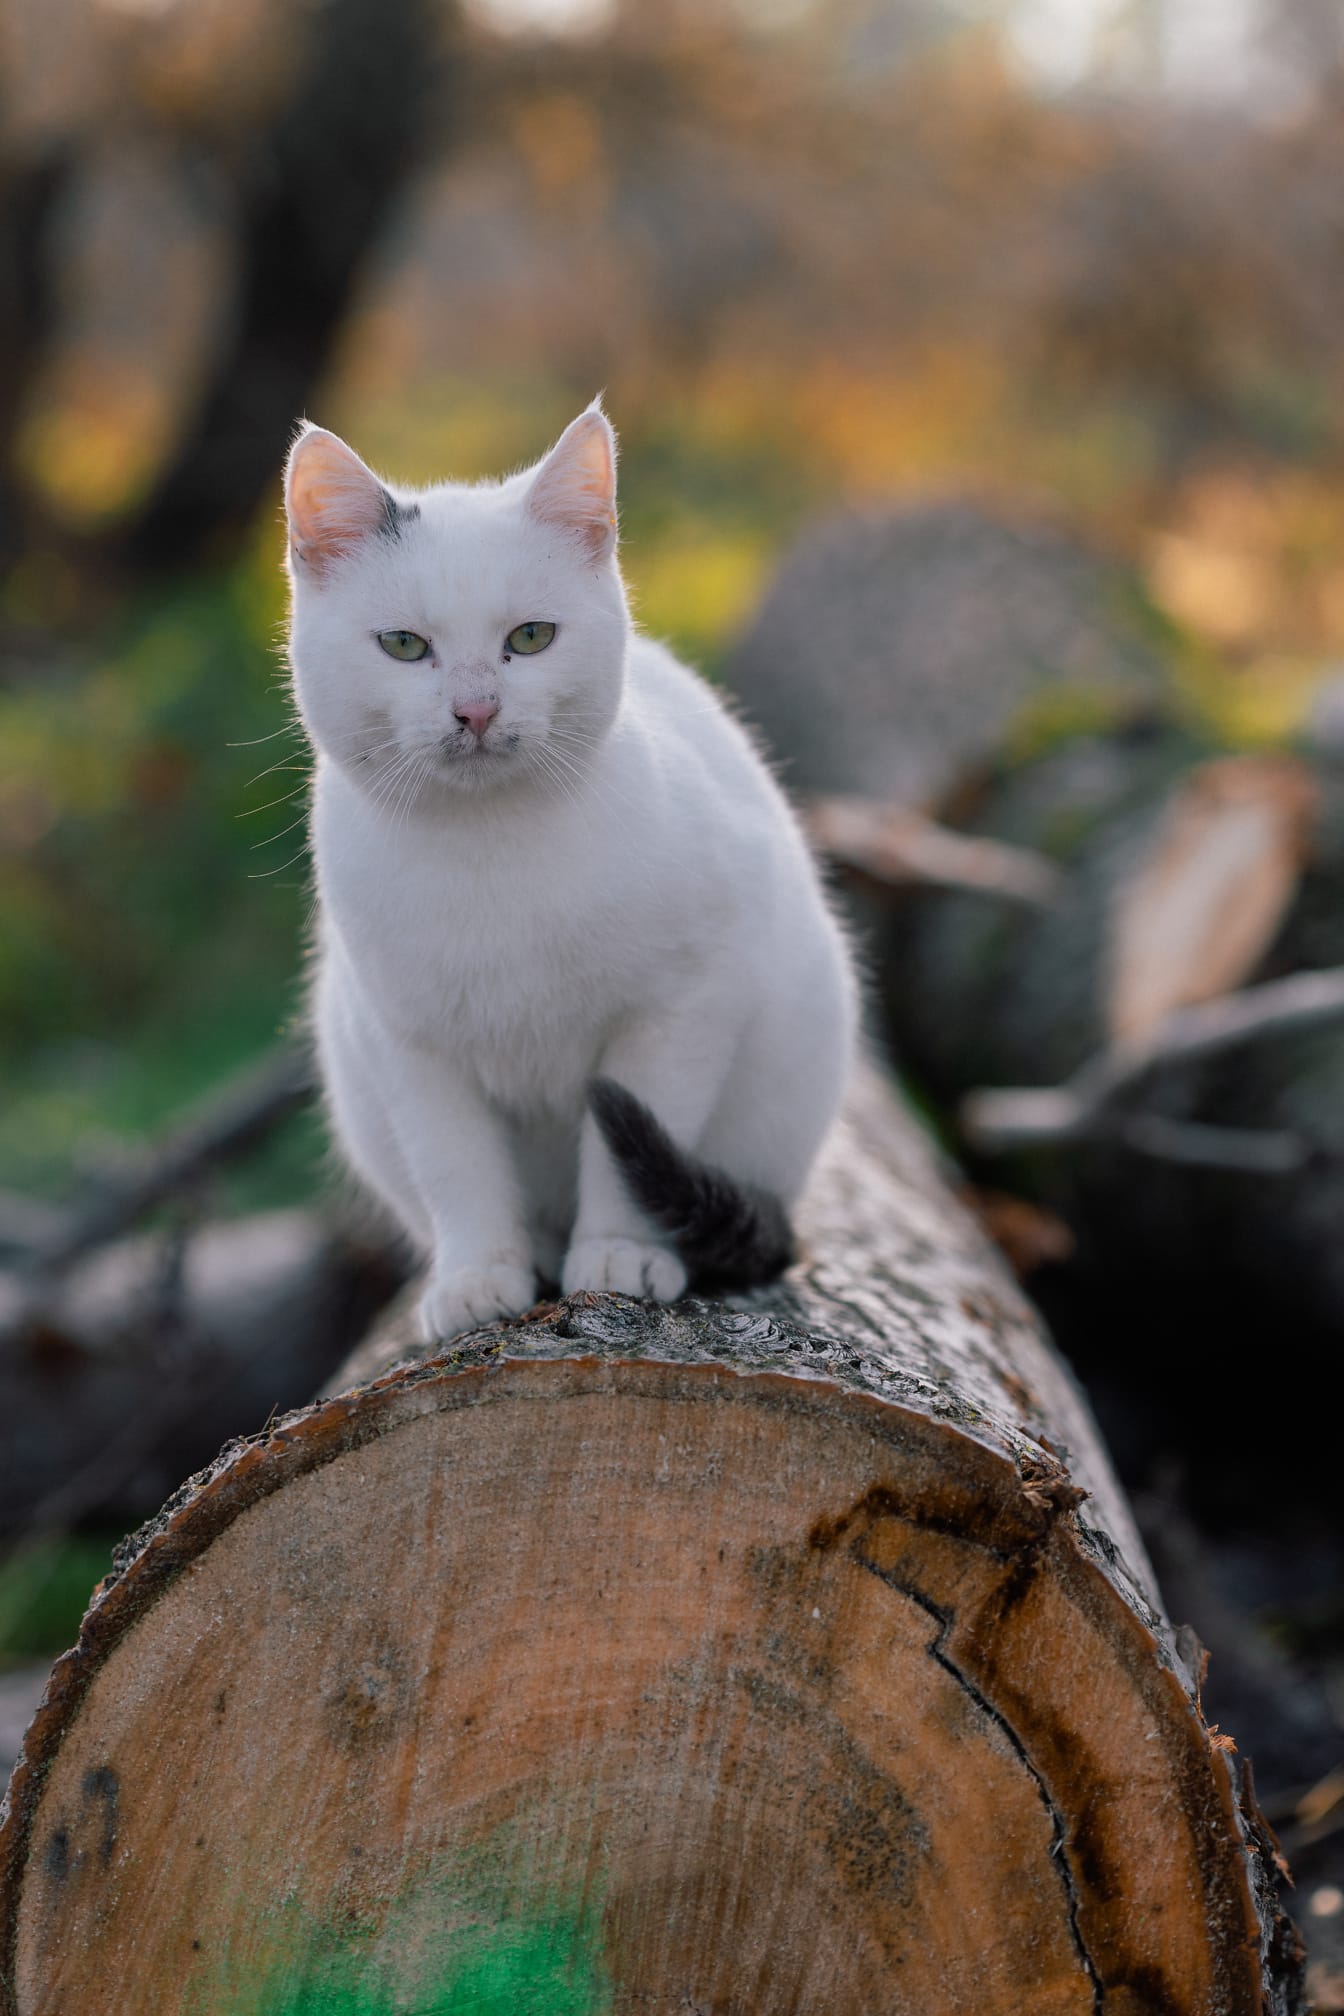 Vit katt med grönaktiga ögon som sitter på ved